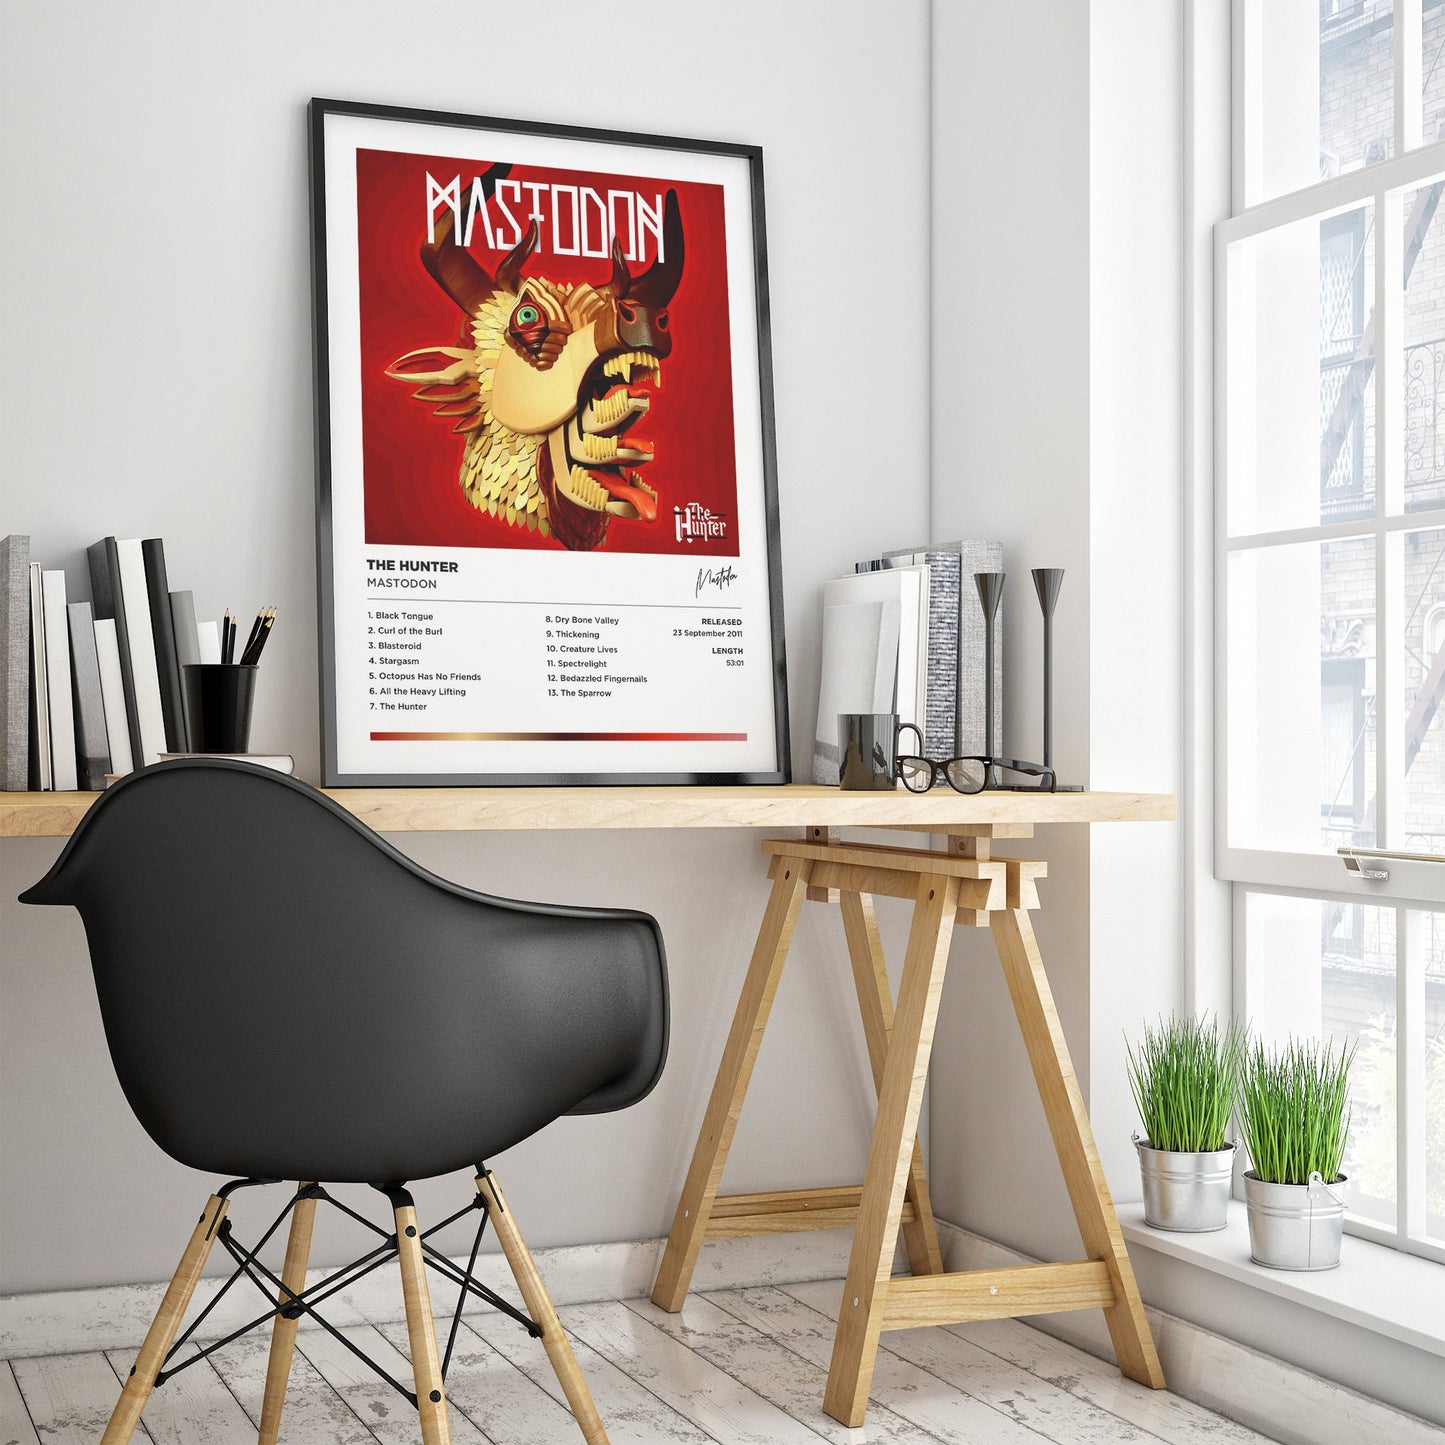 Mastodon - The Hunter Framed Poster Print | Polaroid Style | Album Cover Artwork